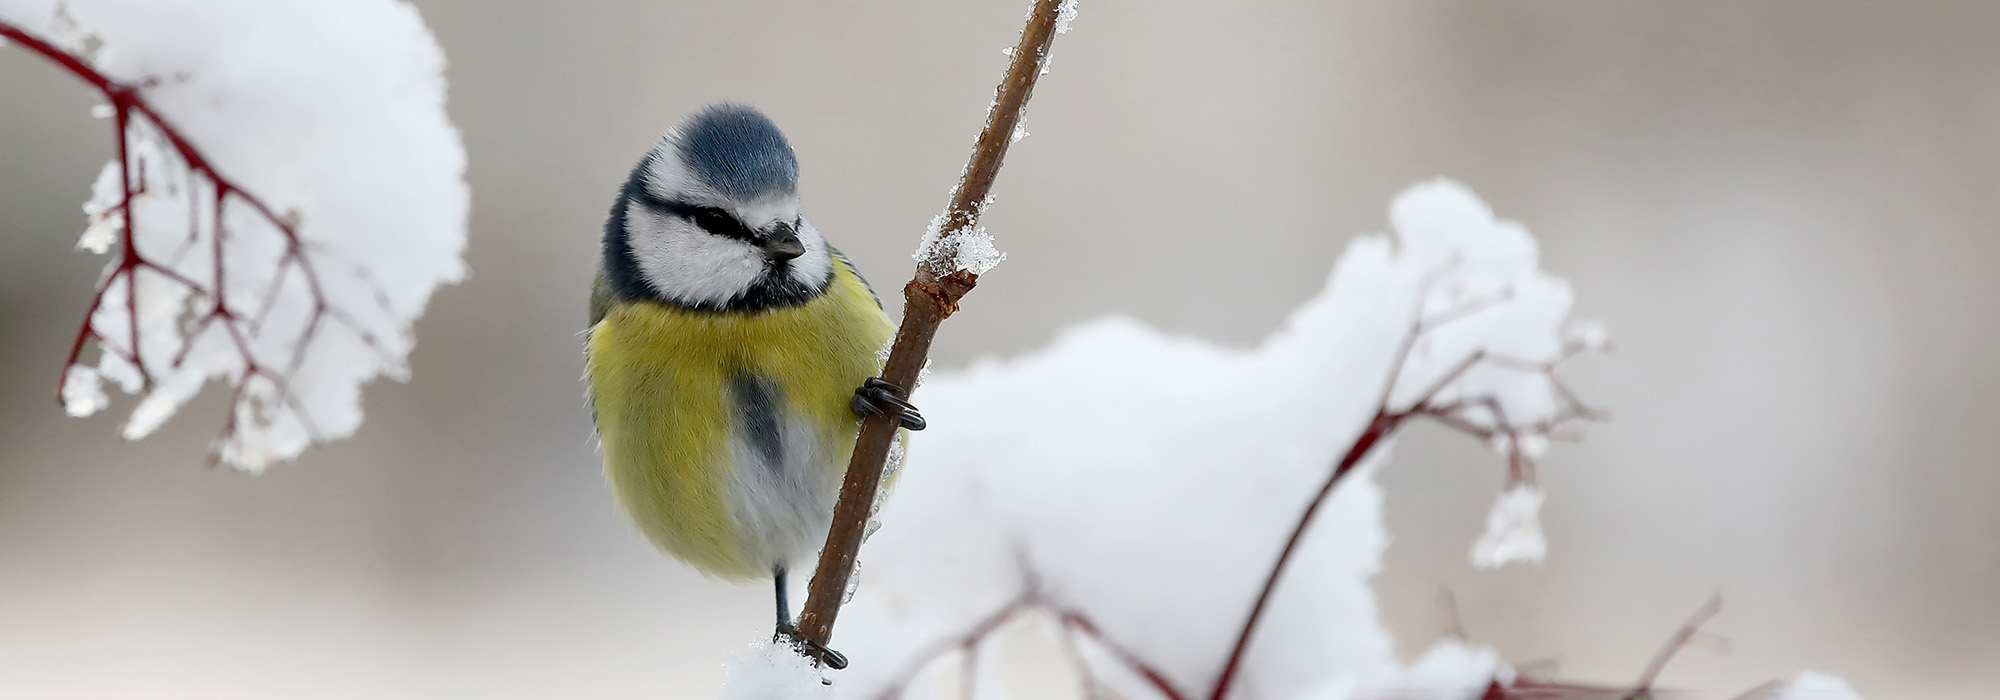 Bird in a snowy tree